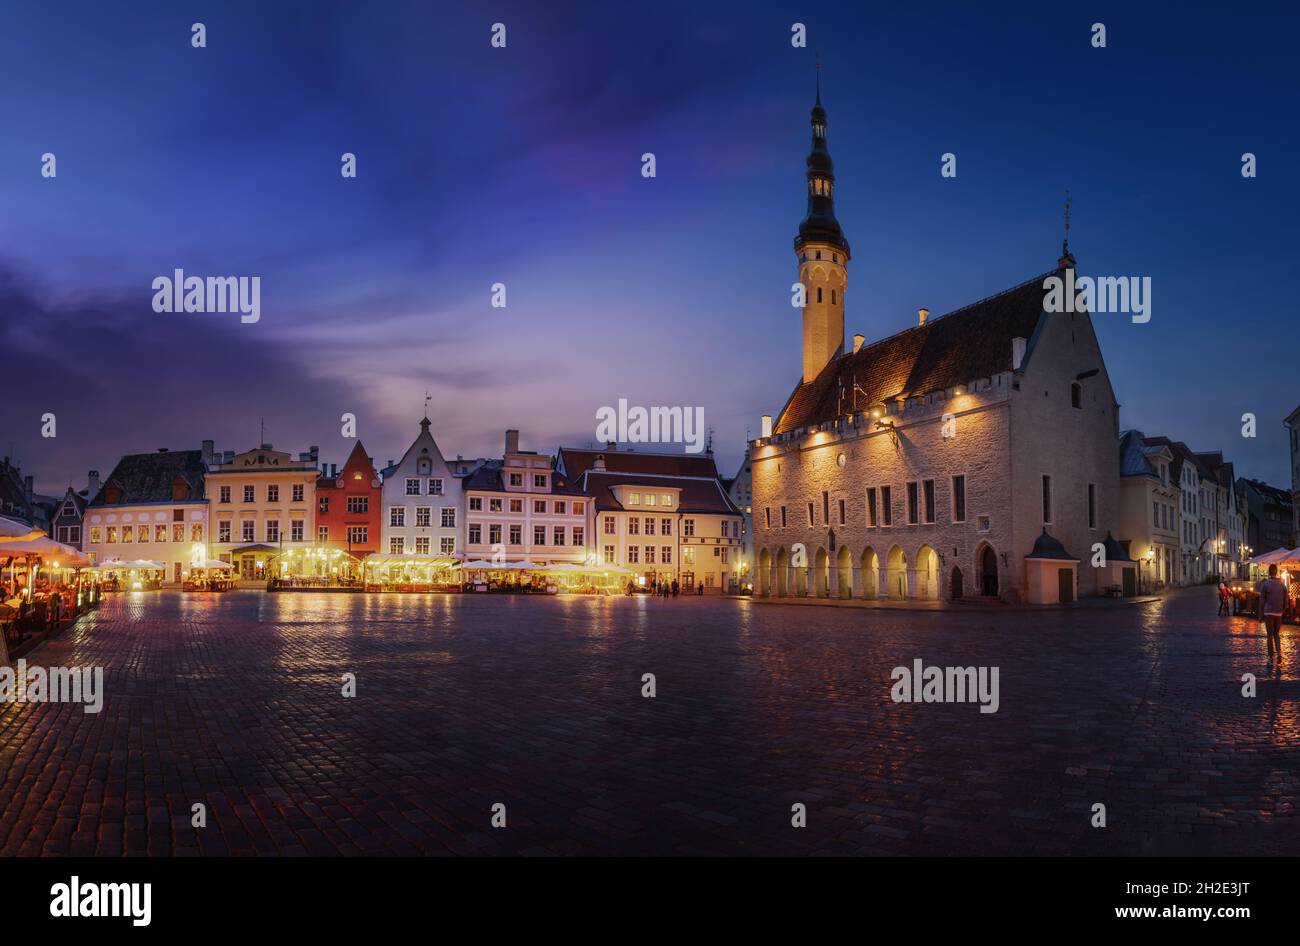 Place de l'hôtel de ville de Tallinn la nuit - Tallinn, Estonie Banque D'Images